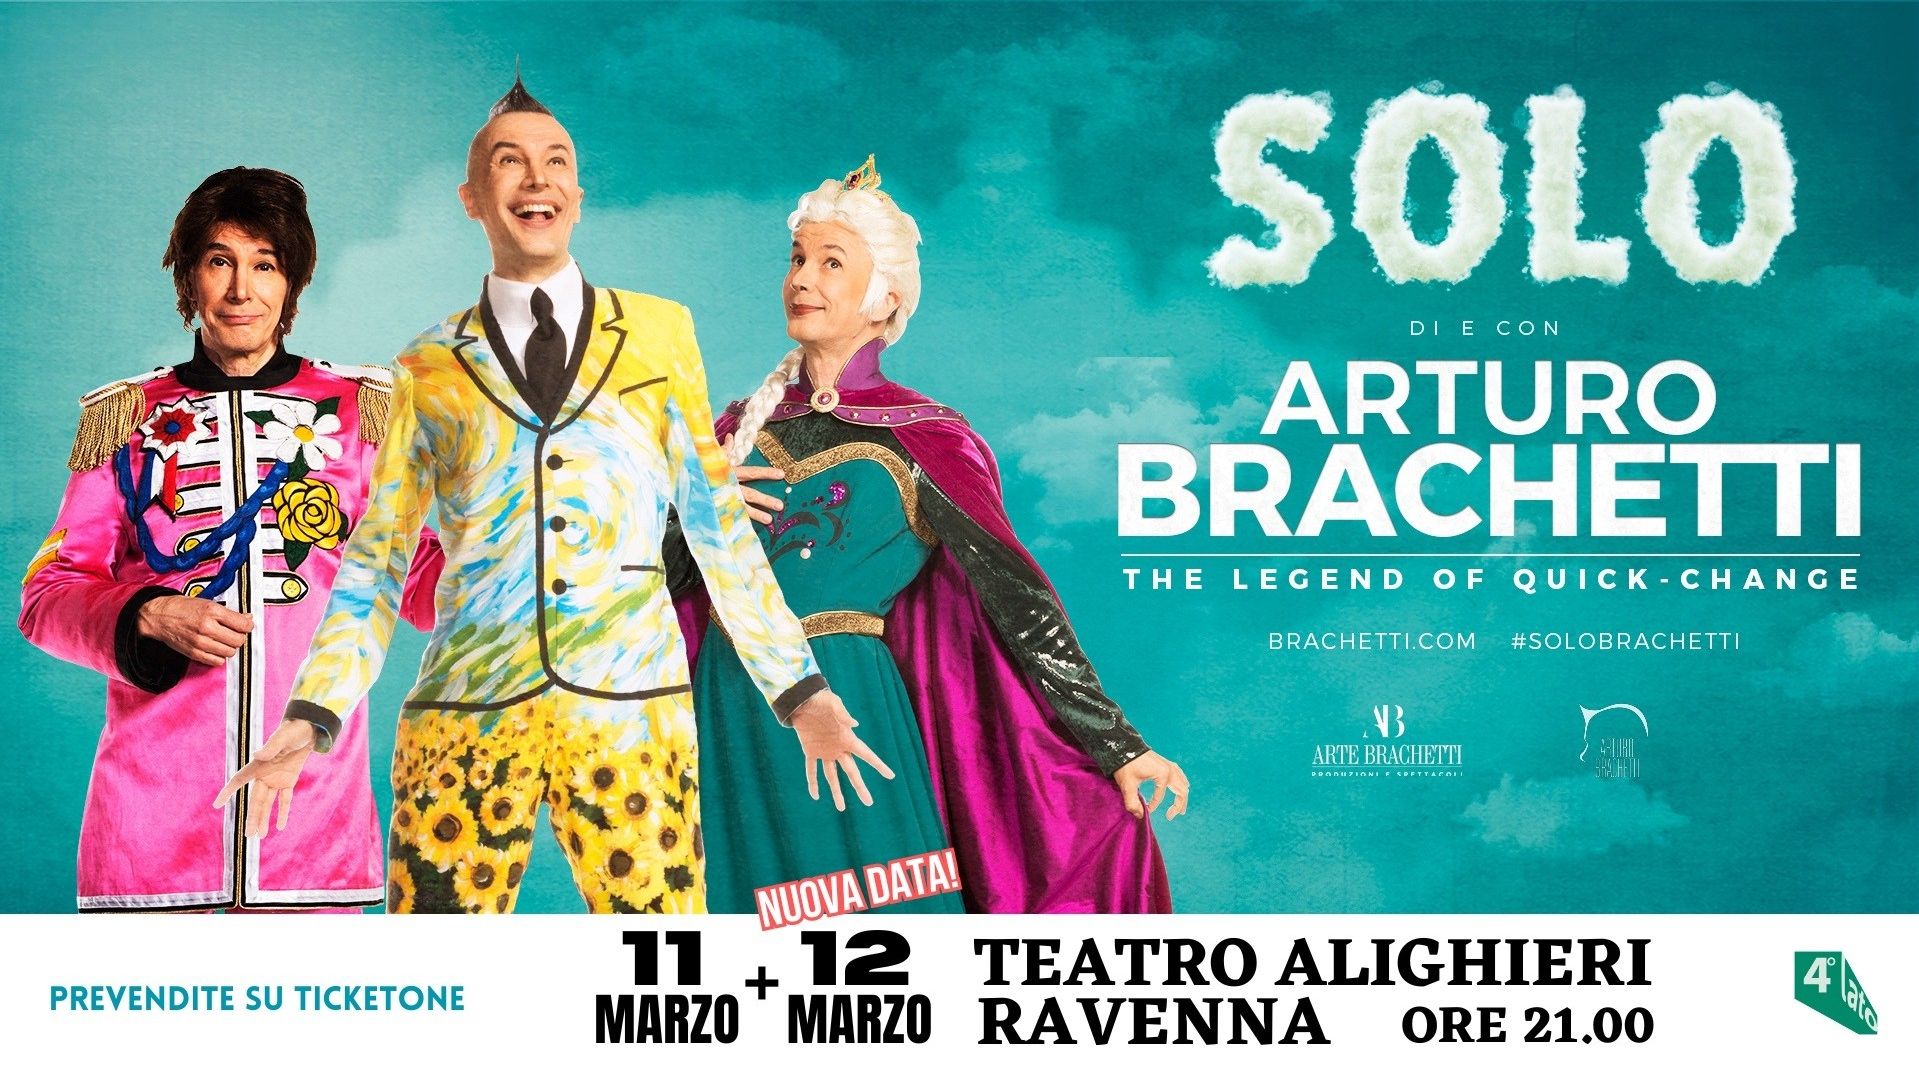 Arturo Brachetti "Solo"